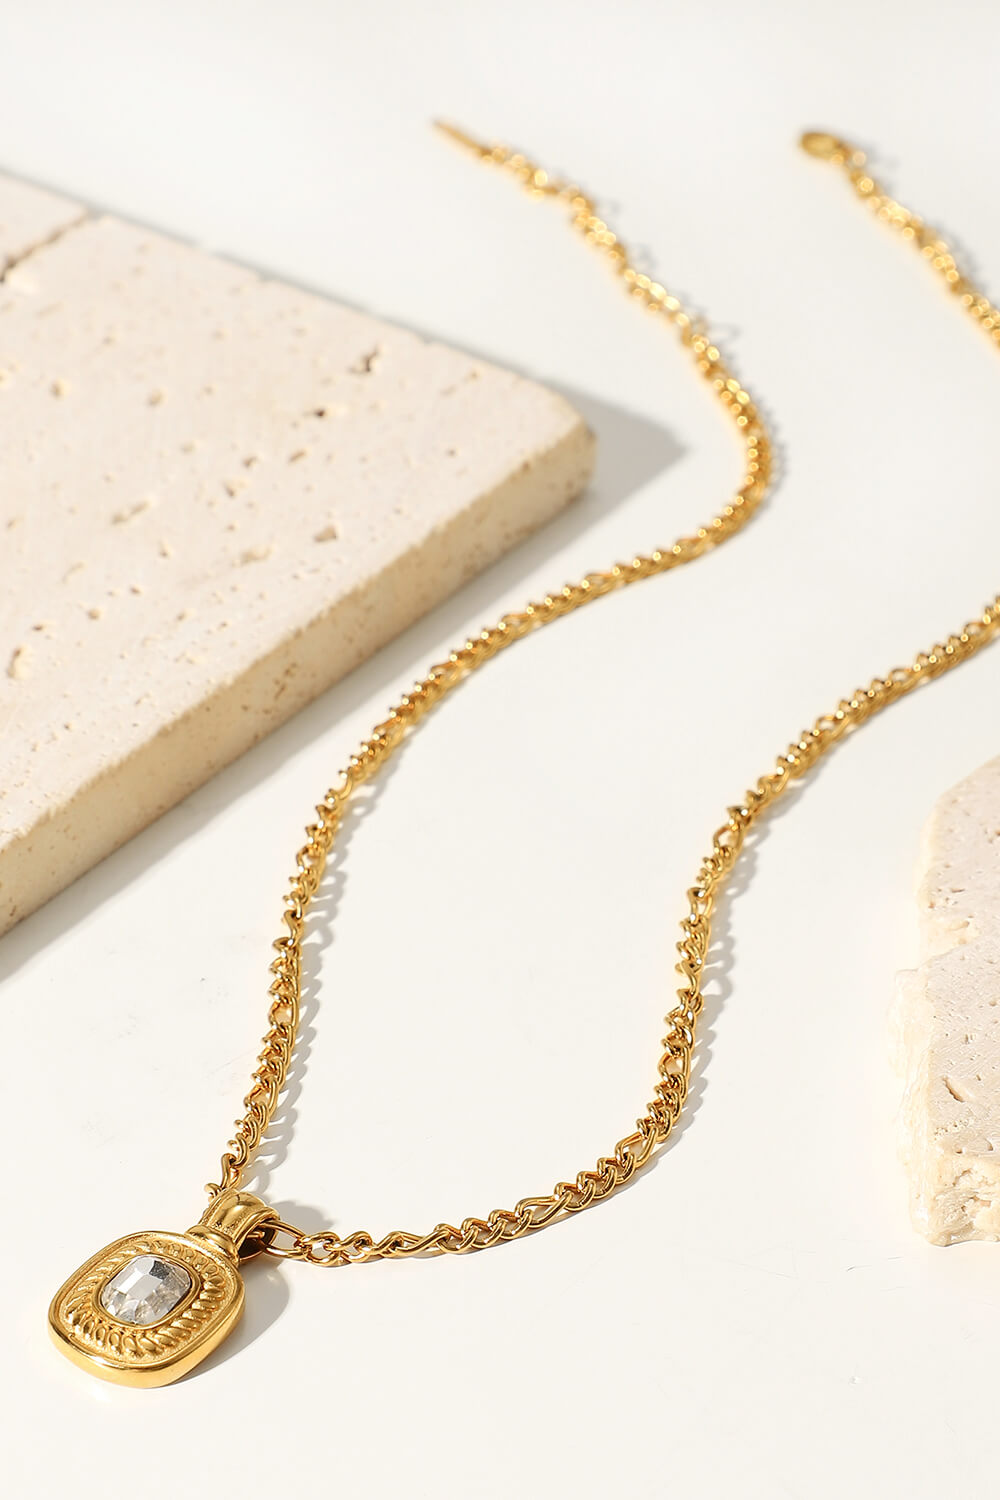 18K Gold Plated Inlaid Rhinestone Pendant Necklace - GlamZation